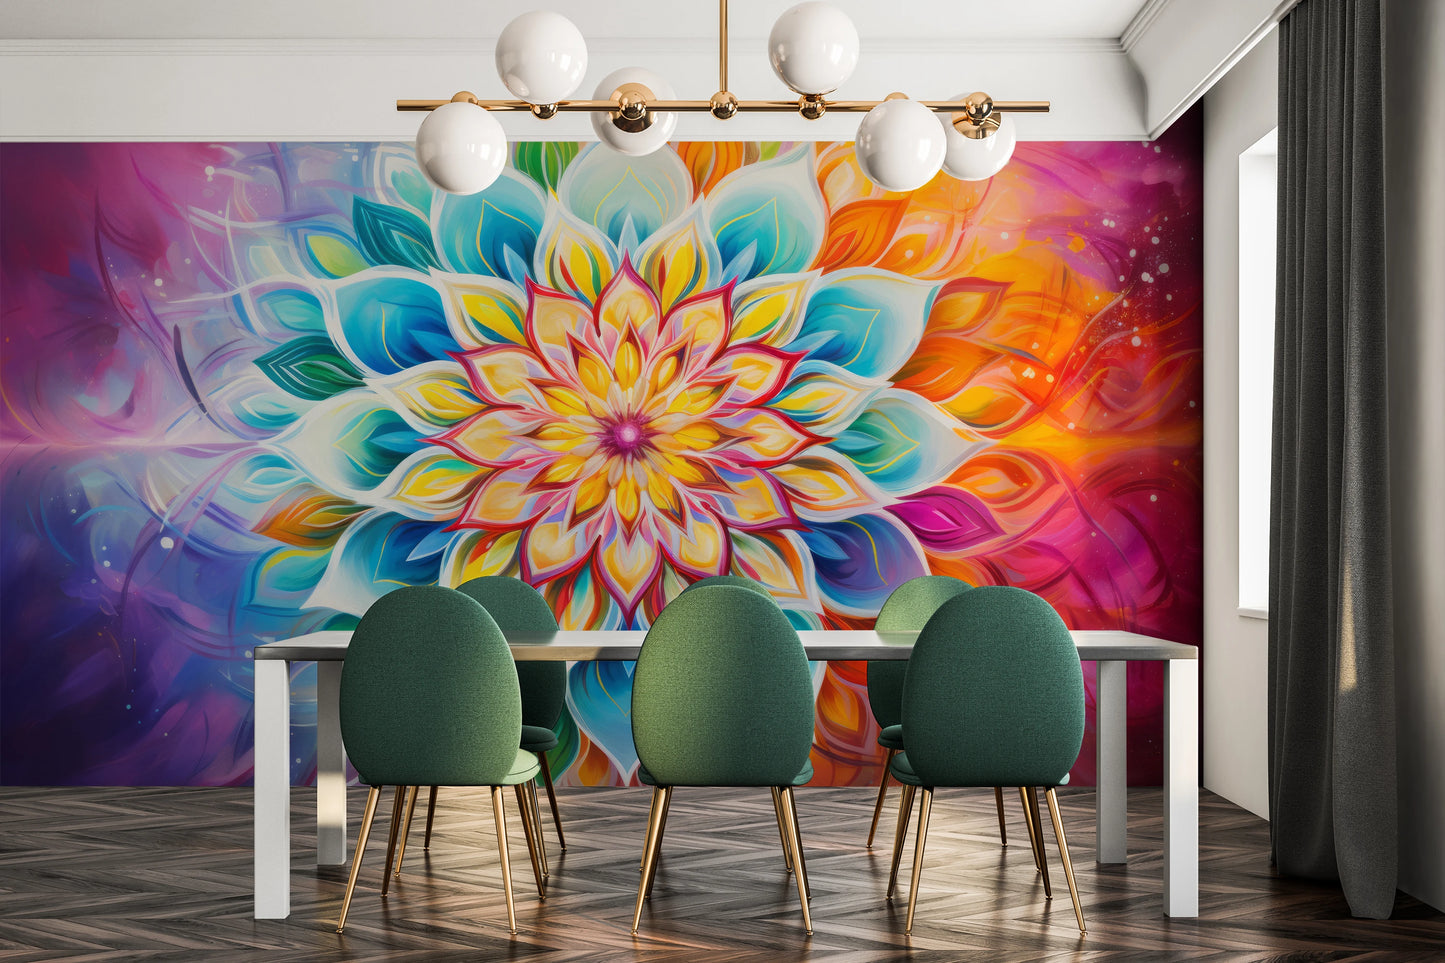 Wzór fototapety malowanej o nazwie Vibrant Lotus pokazanej w aranżacji wnętrza.